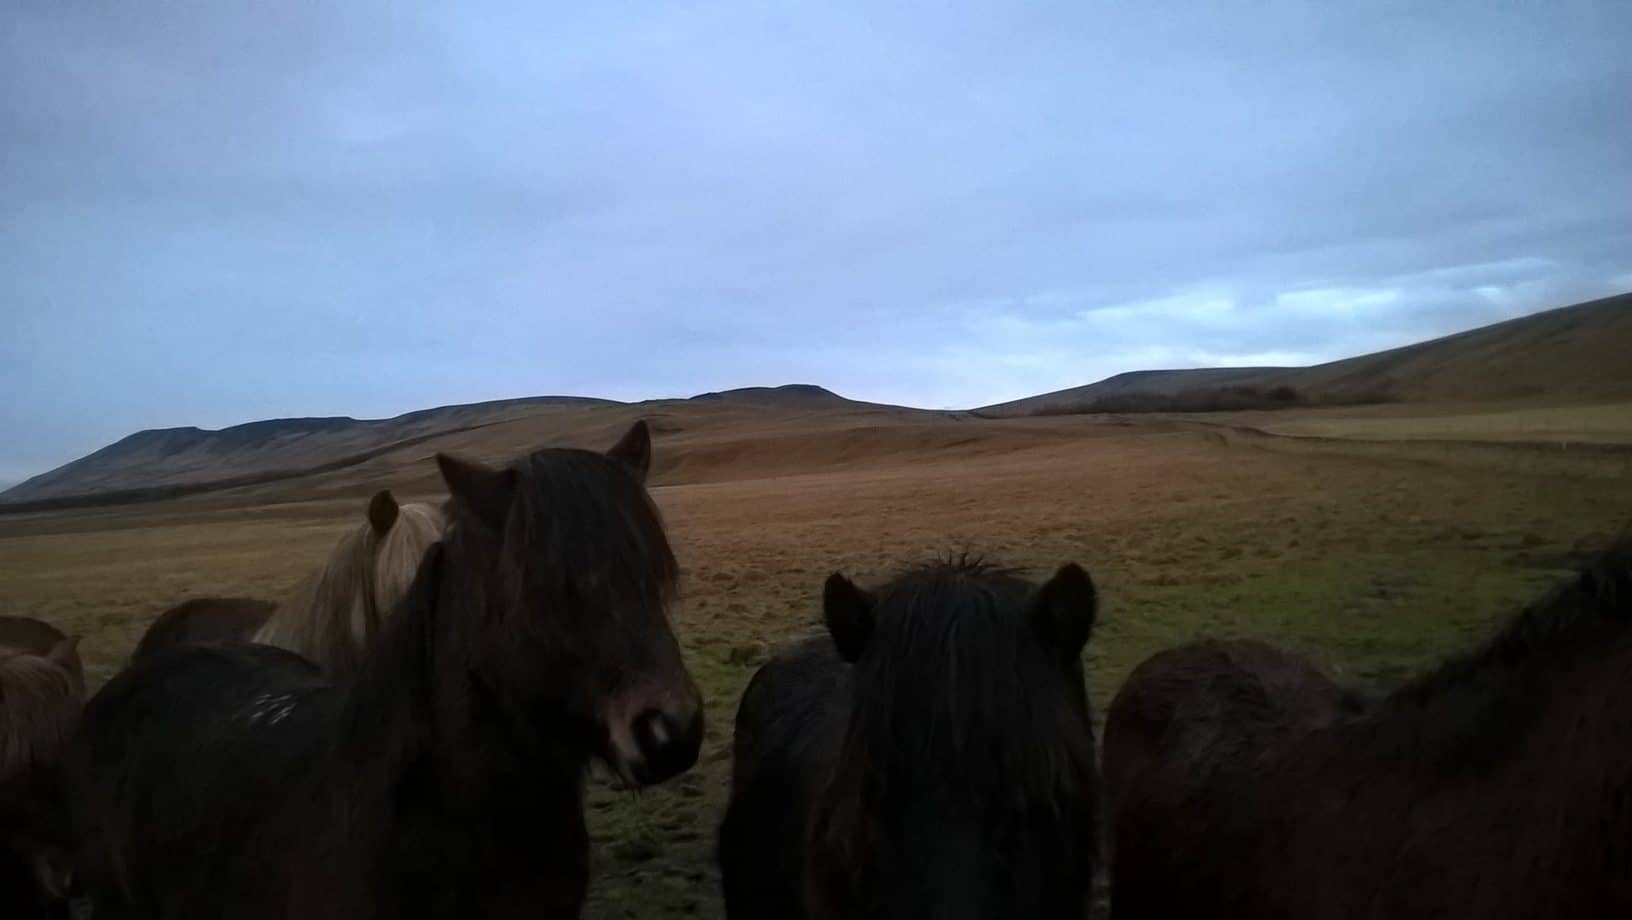 Meeting horses